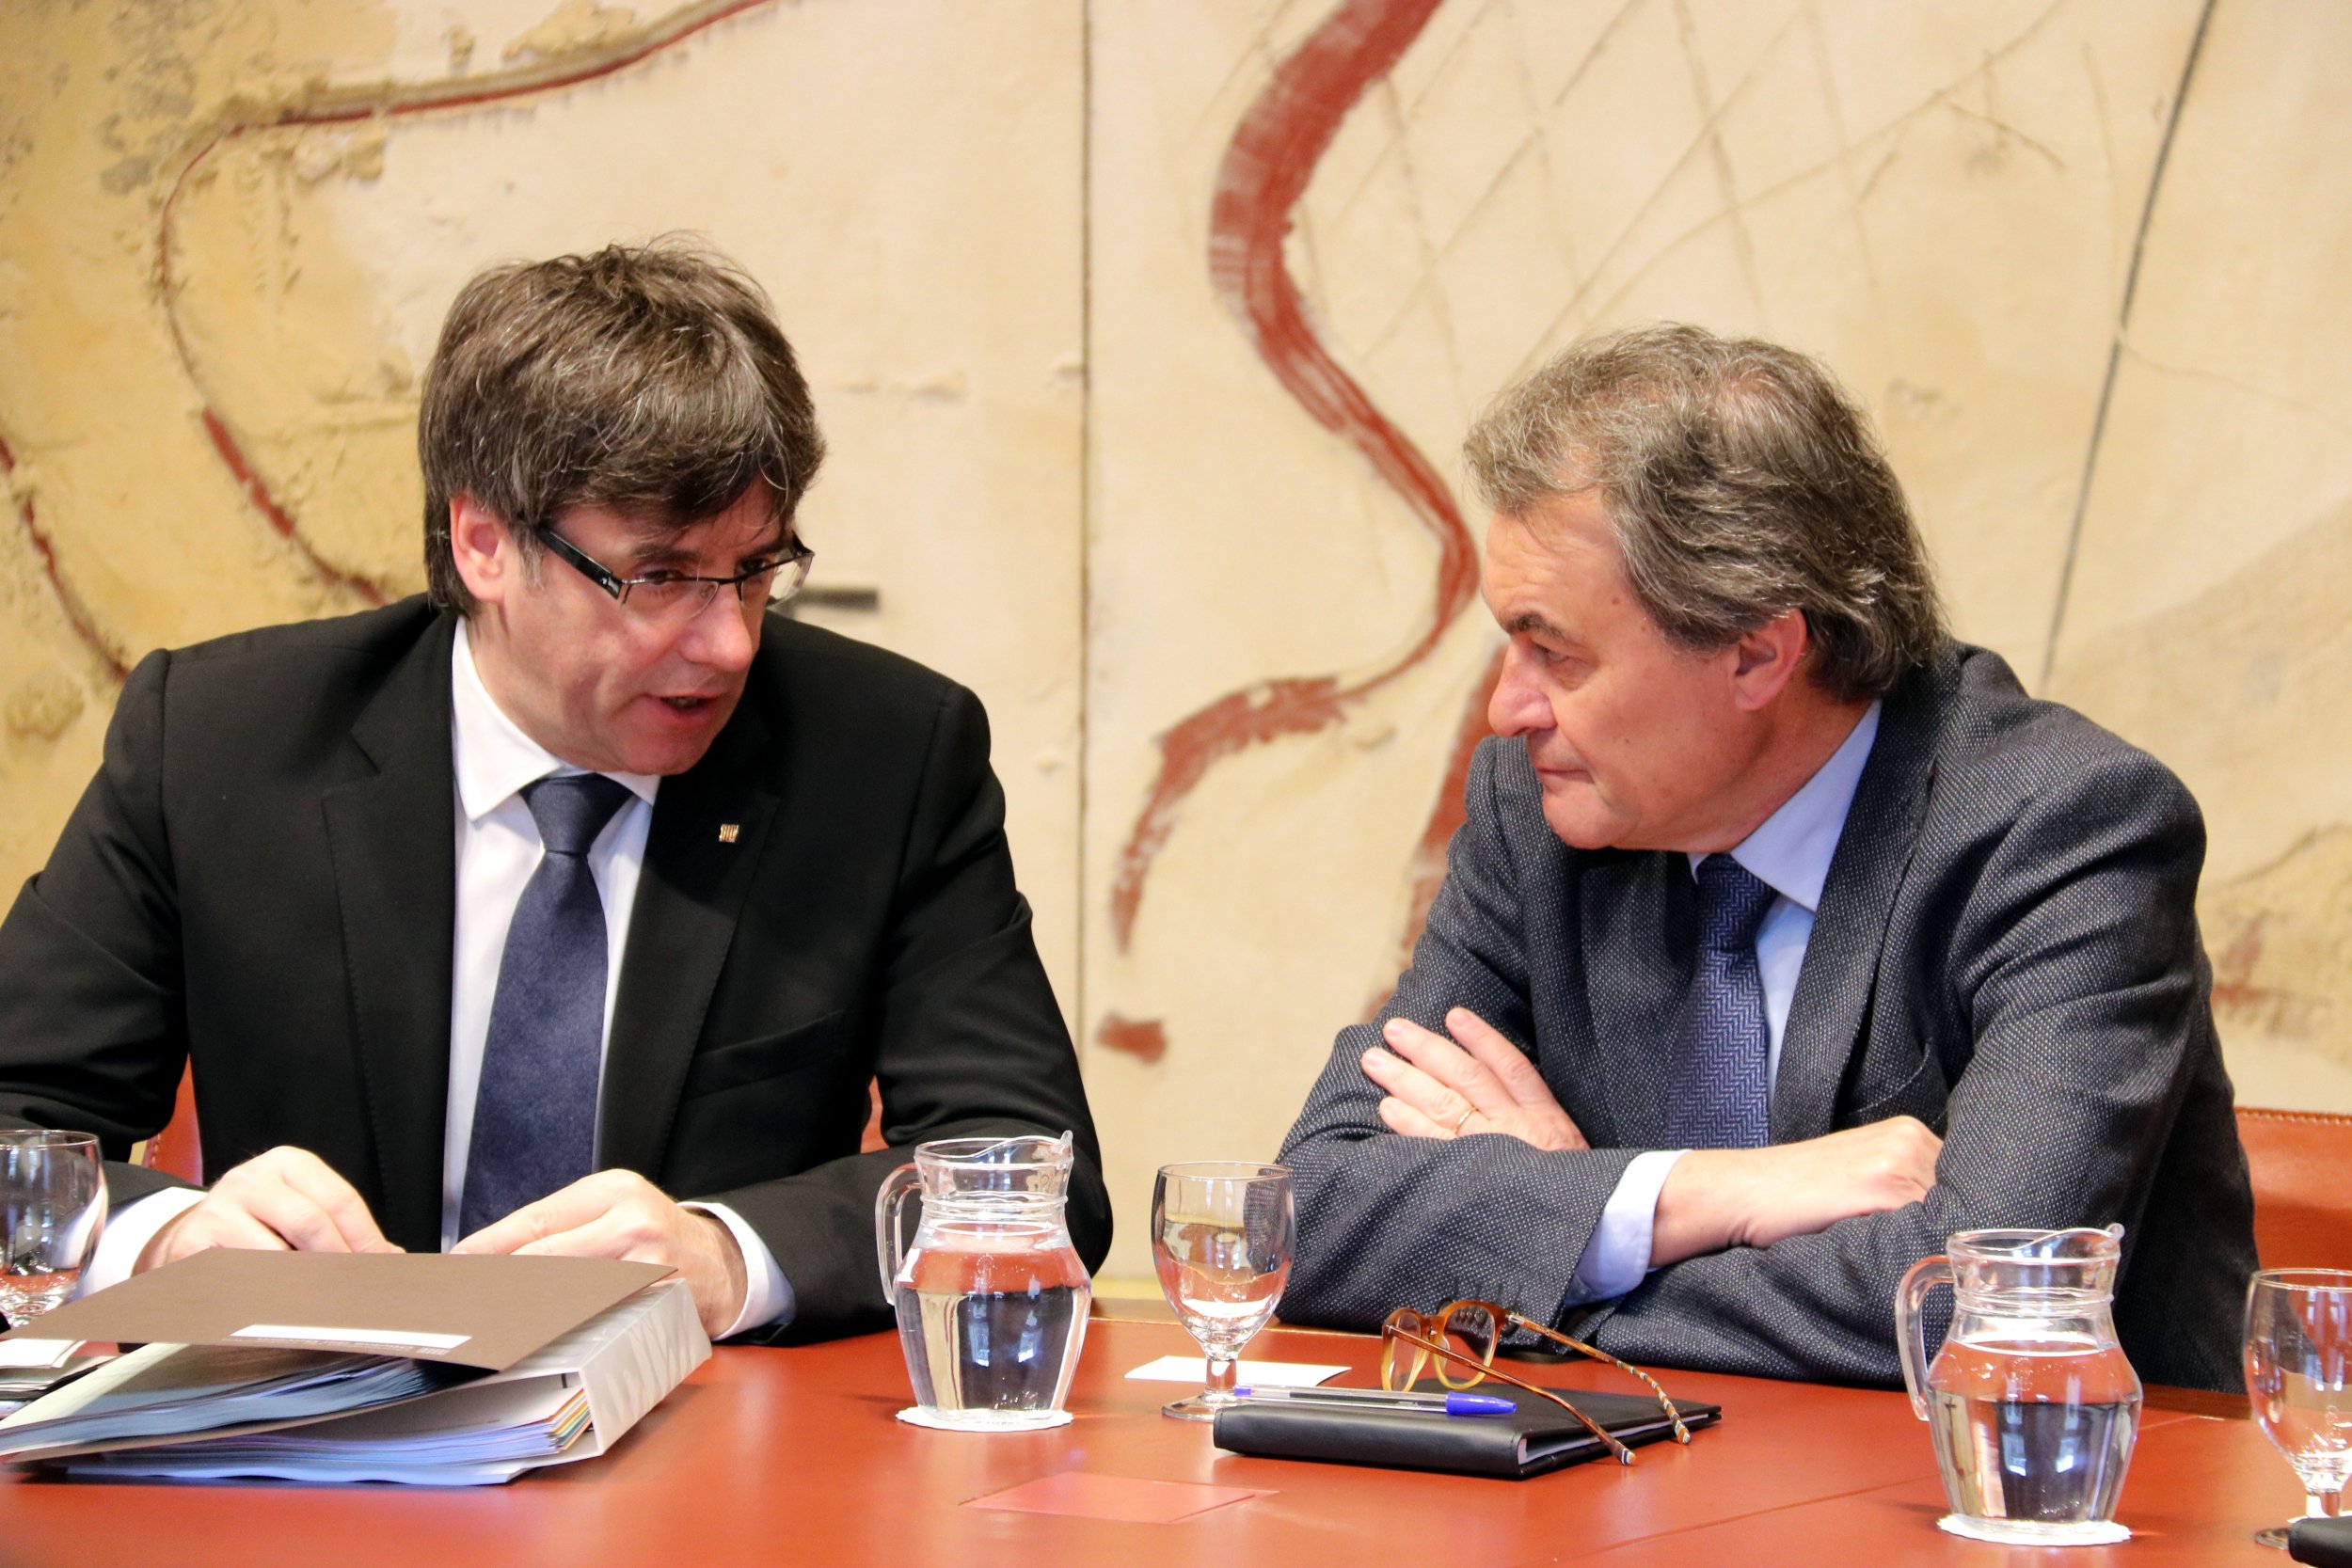 El juez Aguirre denegó la amnistía a Mas y Puigdemont sin esperar el informe del fiscal